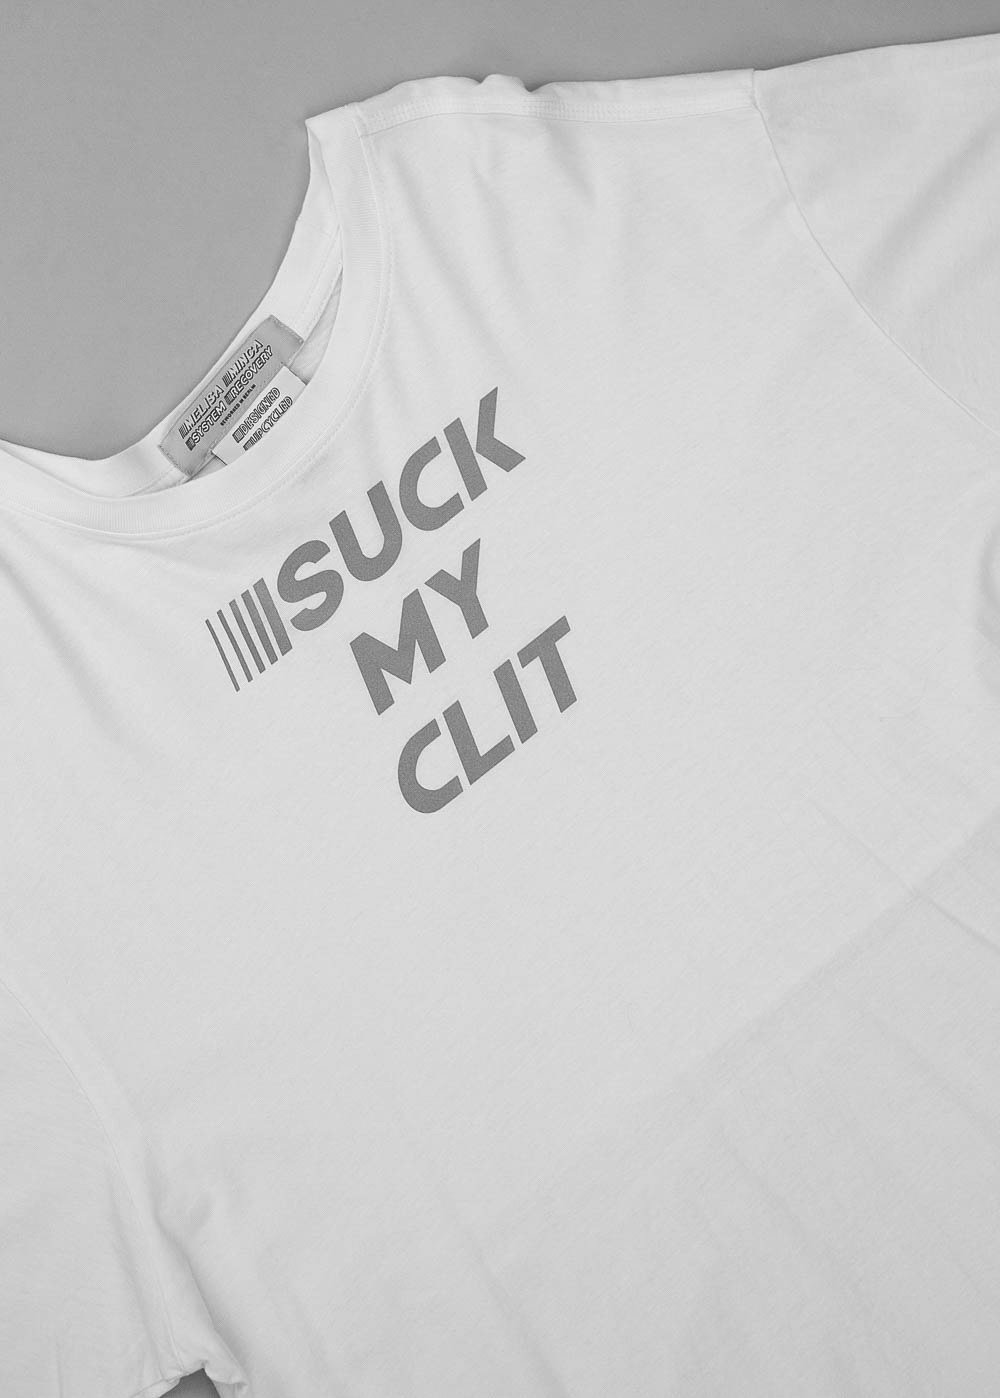 Suck My Clit T-shirt 56